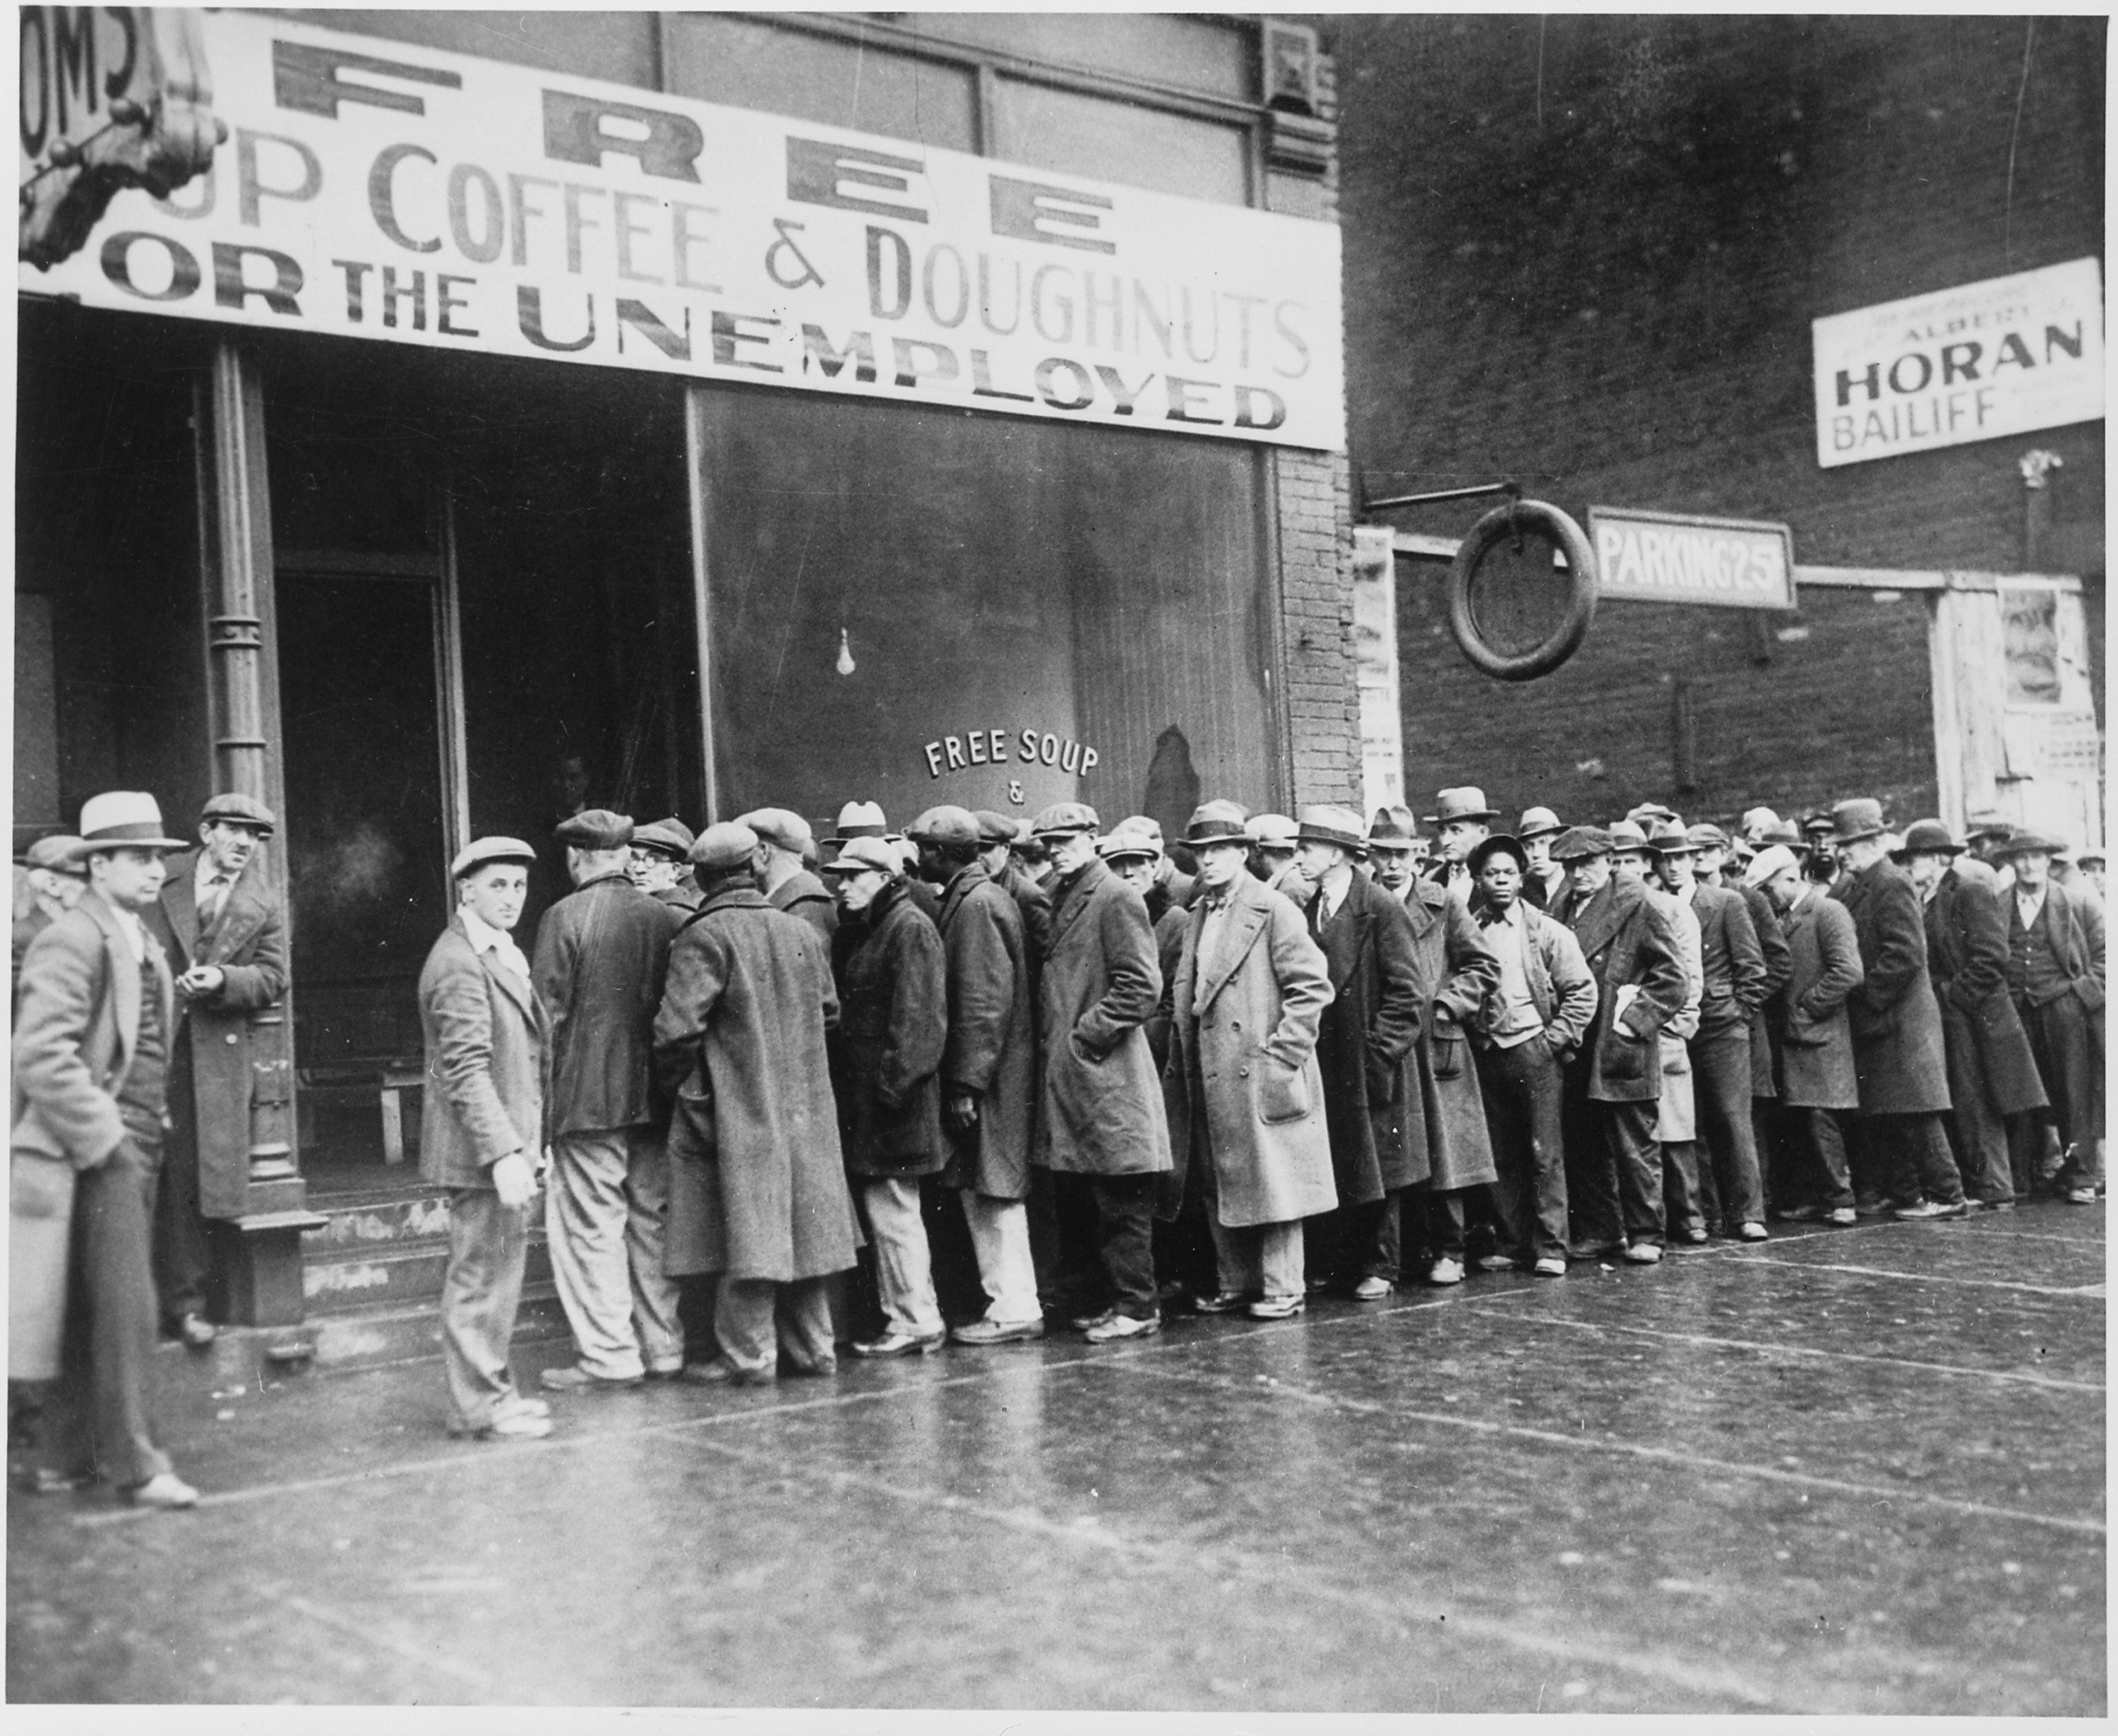 Unemployment Image public domain